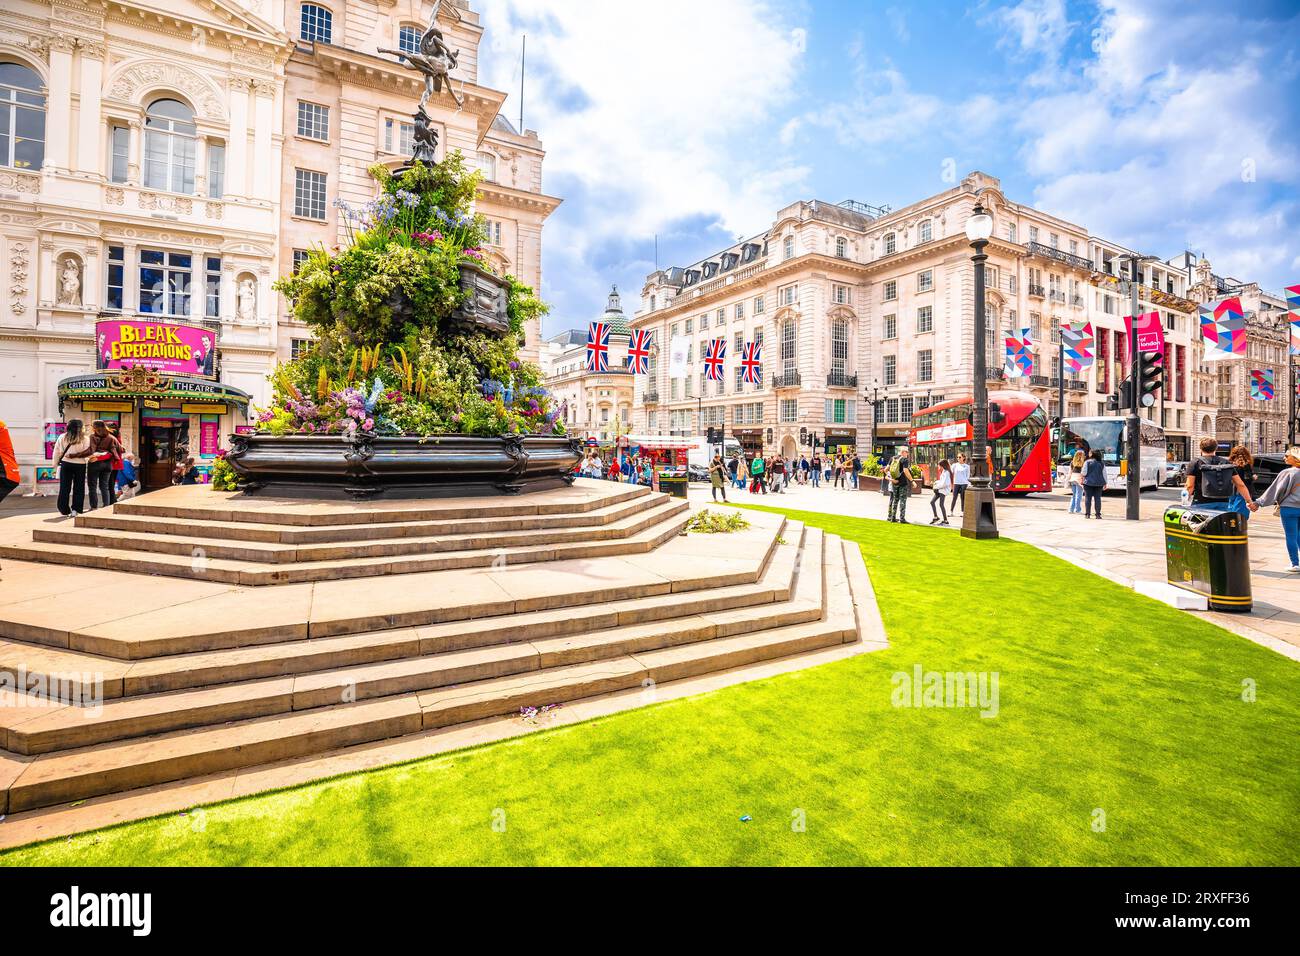 Londra, Regno Unito, giugno 29 2023: Piccadilly Circus Square in London Street View. Vivace luogo turistico nel centro di Londra. Foto Stock